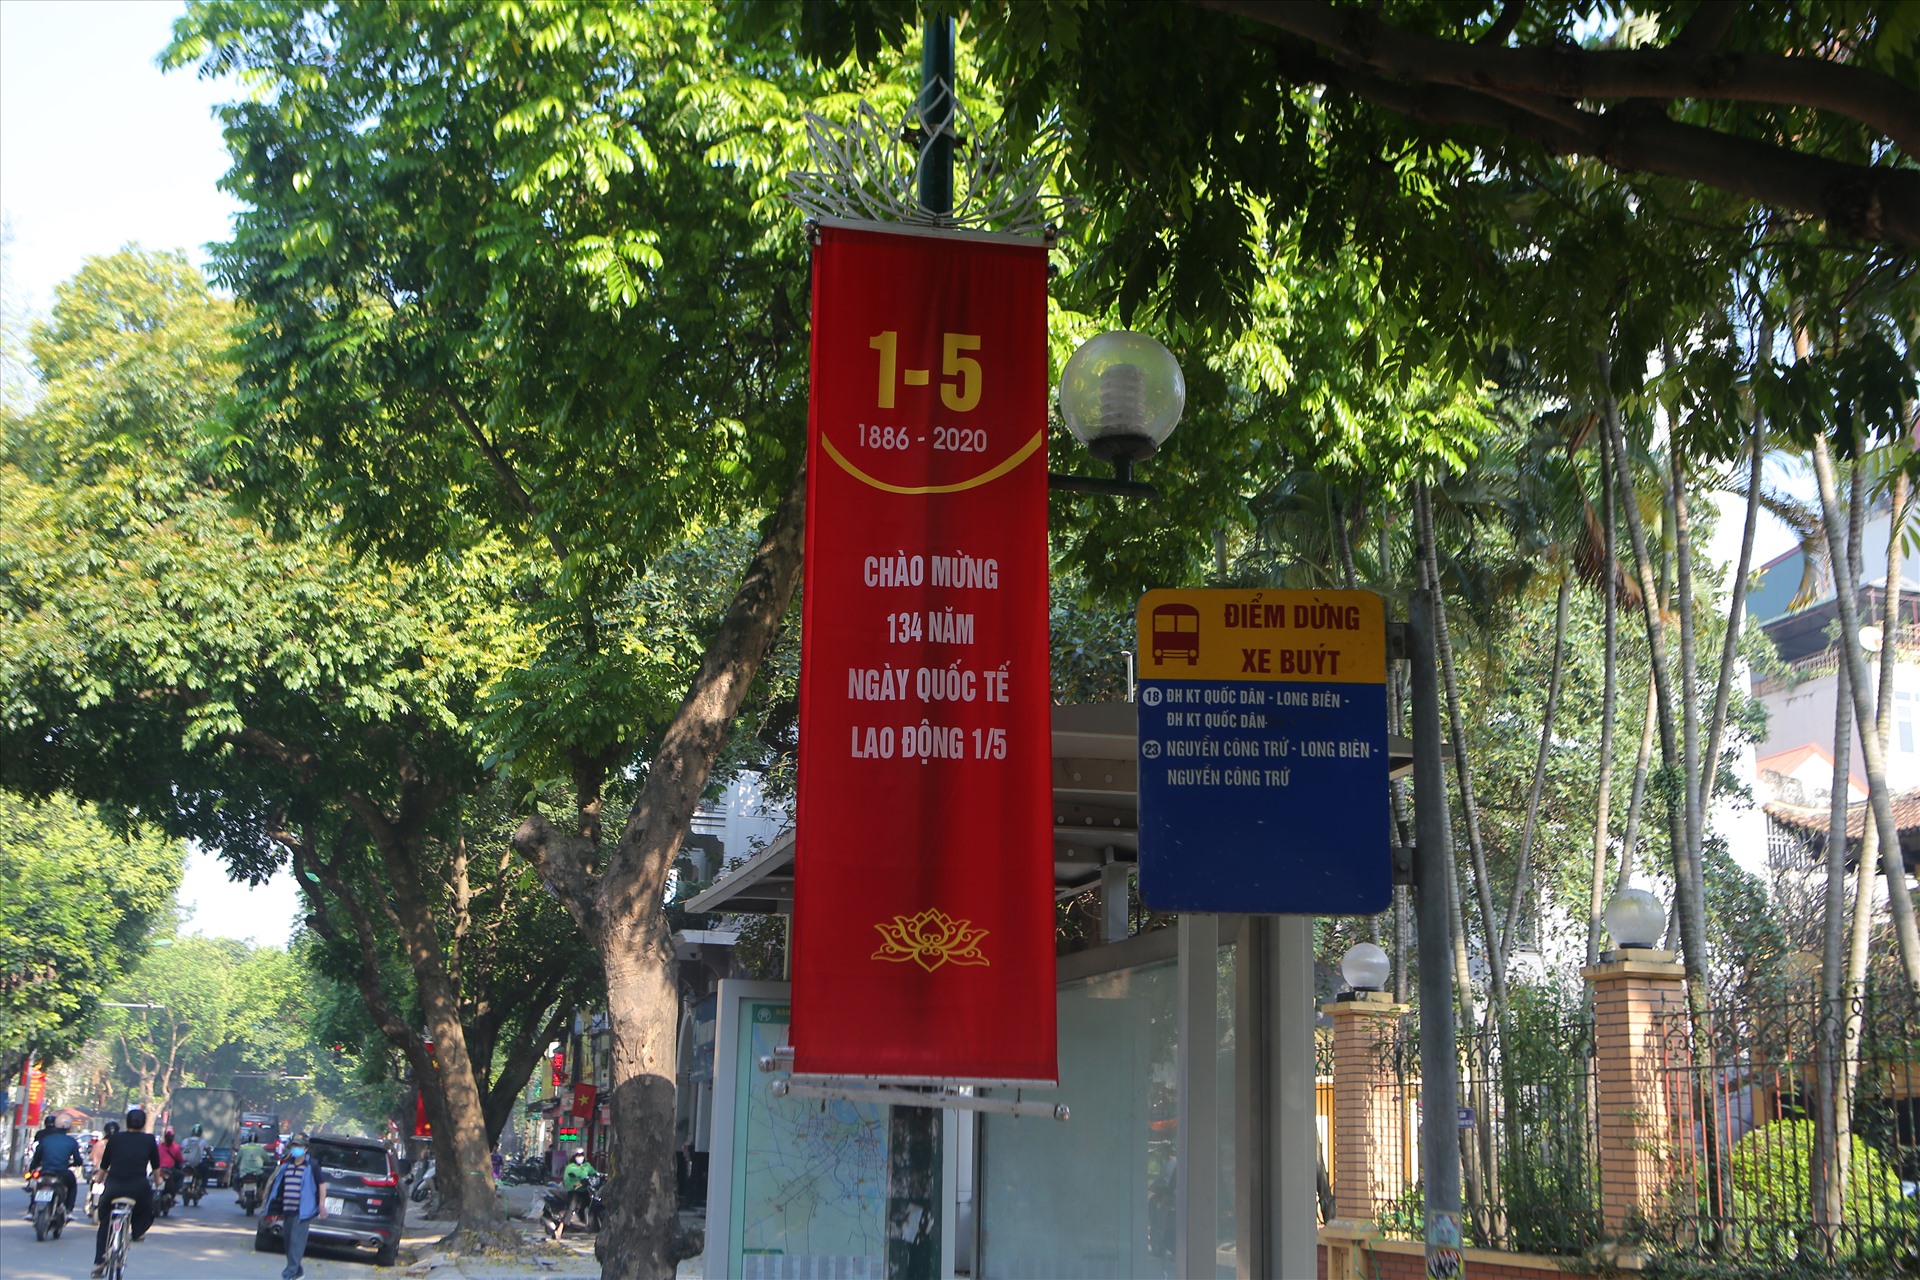 Ngoài quốc kỳ, hàng loạt những khẩu hiệu, biểu ngữ được treo trên các tuyến phố cũng tạo nên vẻ đẹp rực rỡ cho Thủ đô ngàn năm văn hiến.